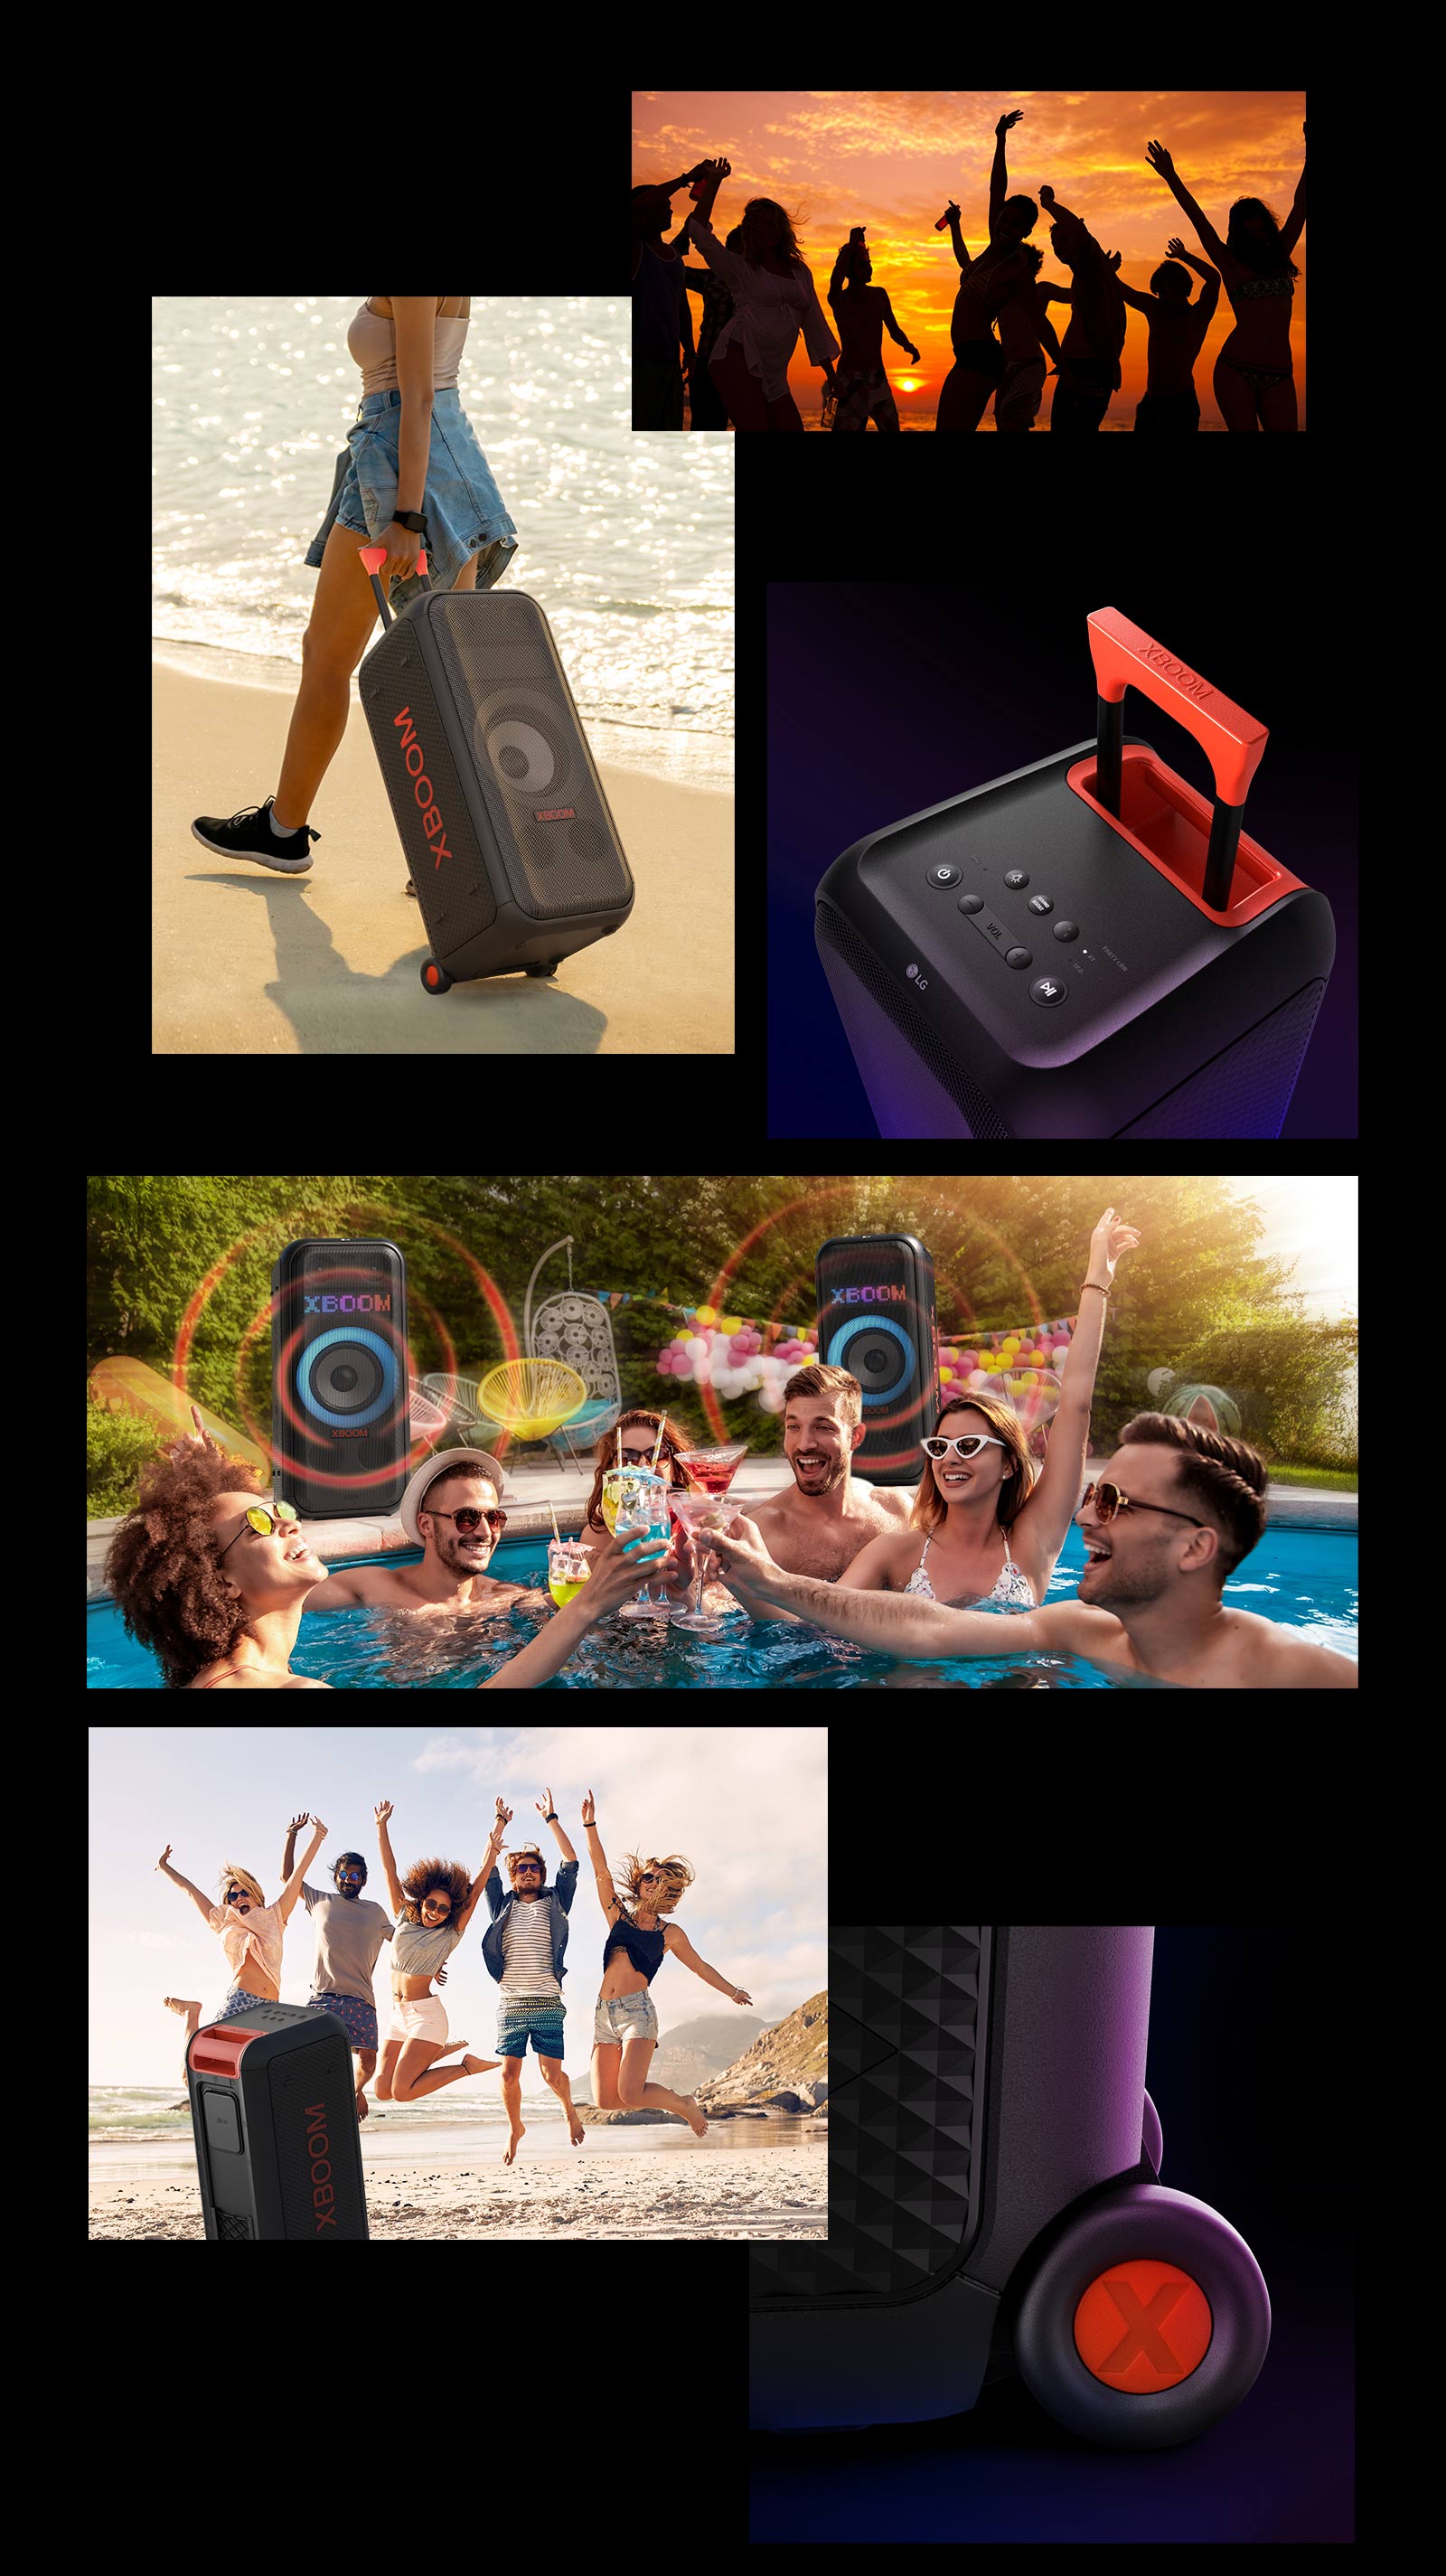 Az LG XBOOM XL7S szemléltető képei. Fent emberek sziluettje látható, valamint egy nő, aki a teleszkópos fogantyú és a kerekek segítségével könnyedén mozgatja a hangszórót. A hangszóró és a teleszkópos fogantyú felülnézete. Az emberek medencés partin szórakoznak, mögöttük két LG XBOOM XL7S látható hangot jelképező grafikával. A hangszóró hátulnézetből és a tengerparton ugráló emberek láthatók, valamint egy közeli felvétel a kerékről.